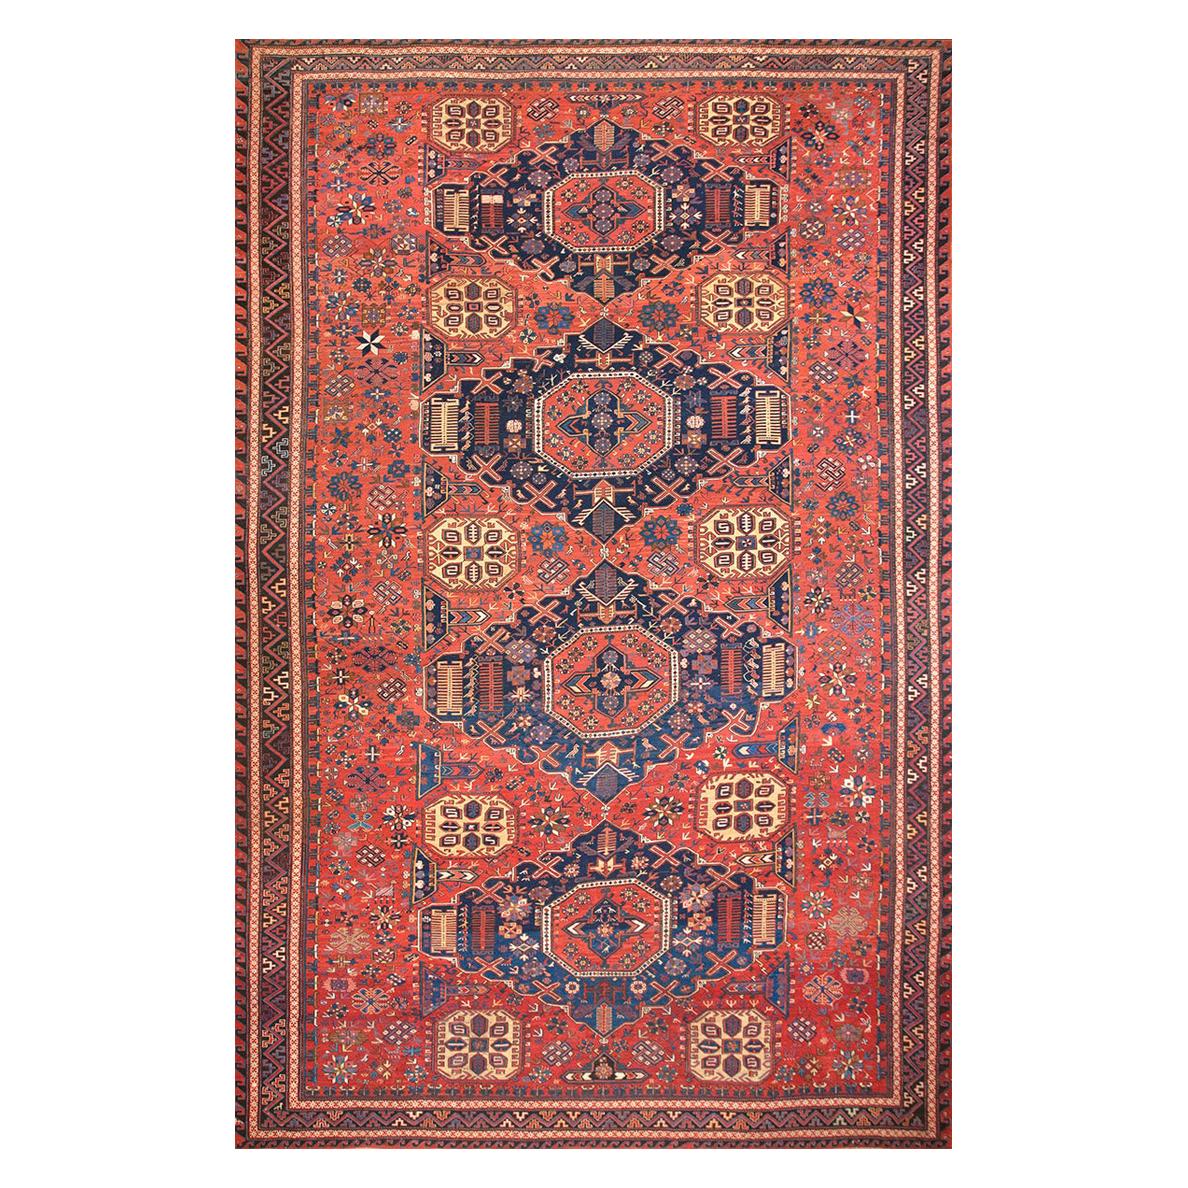 19th Century Caucasian Sumak Carpet ( 11'2" x 17'4" - 340 x 530 )